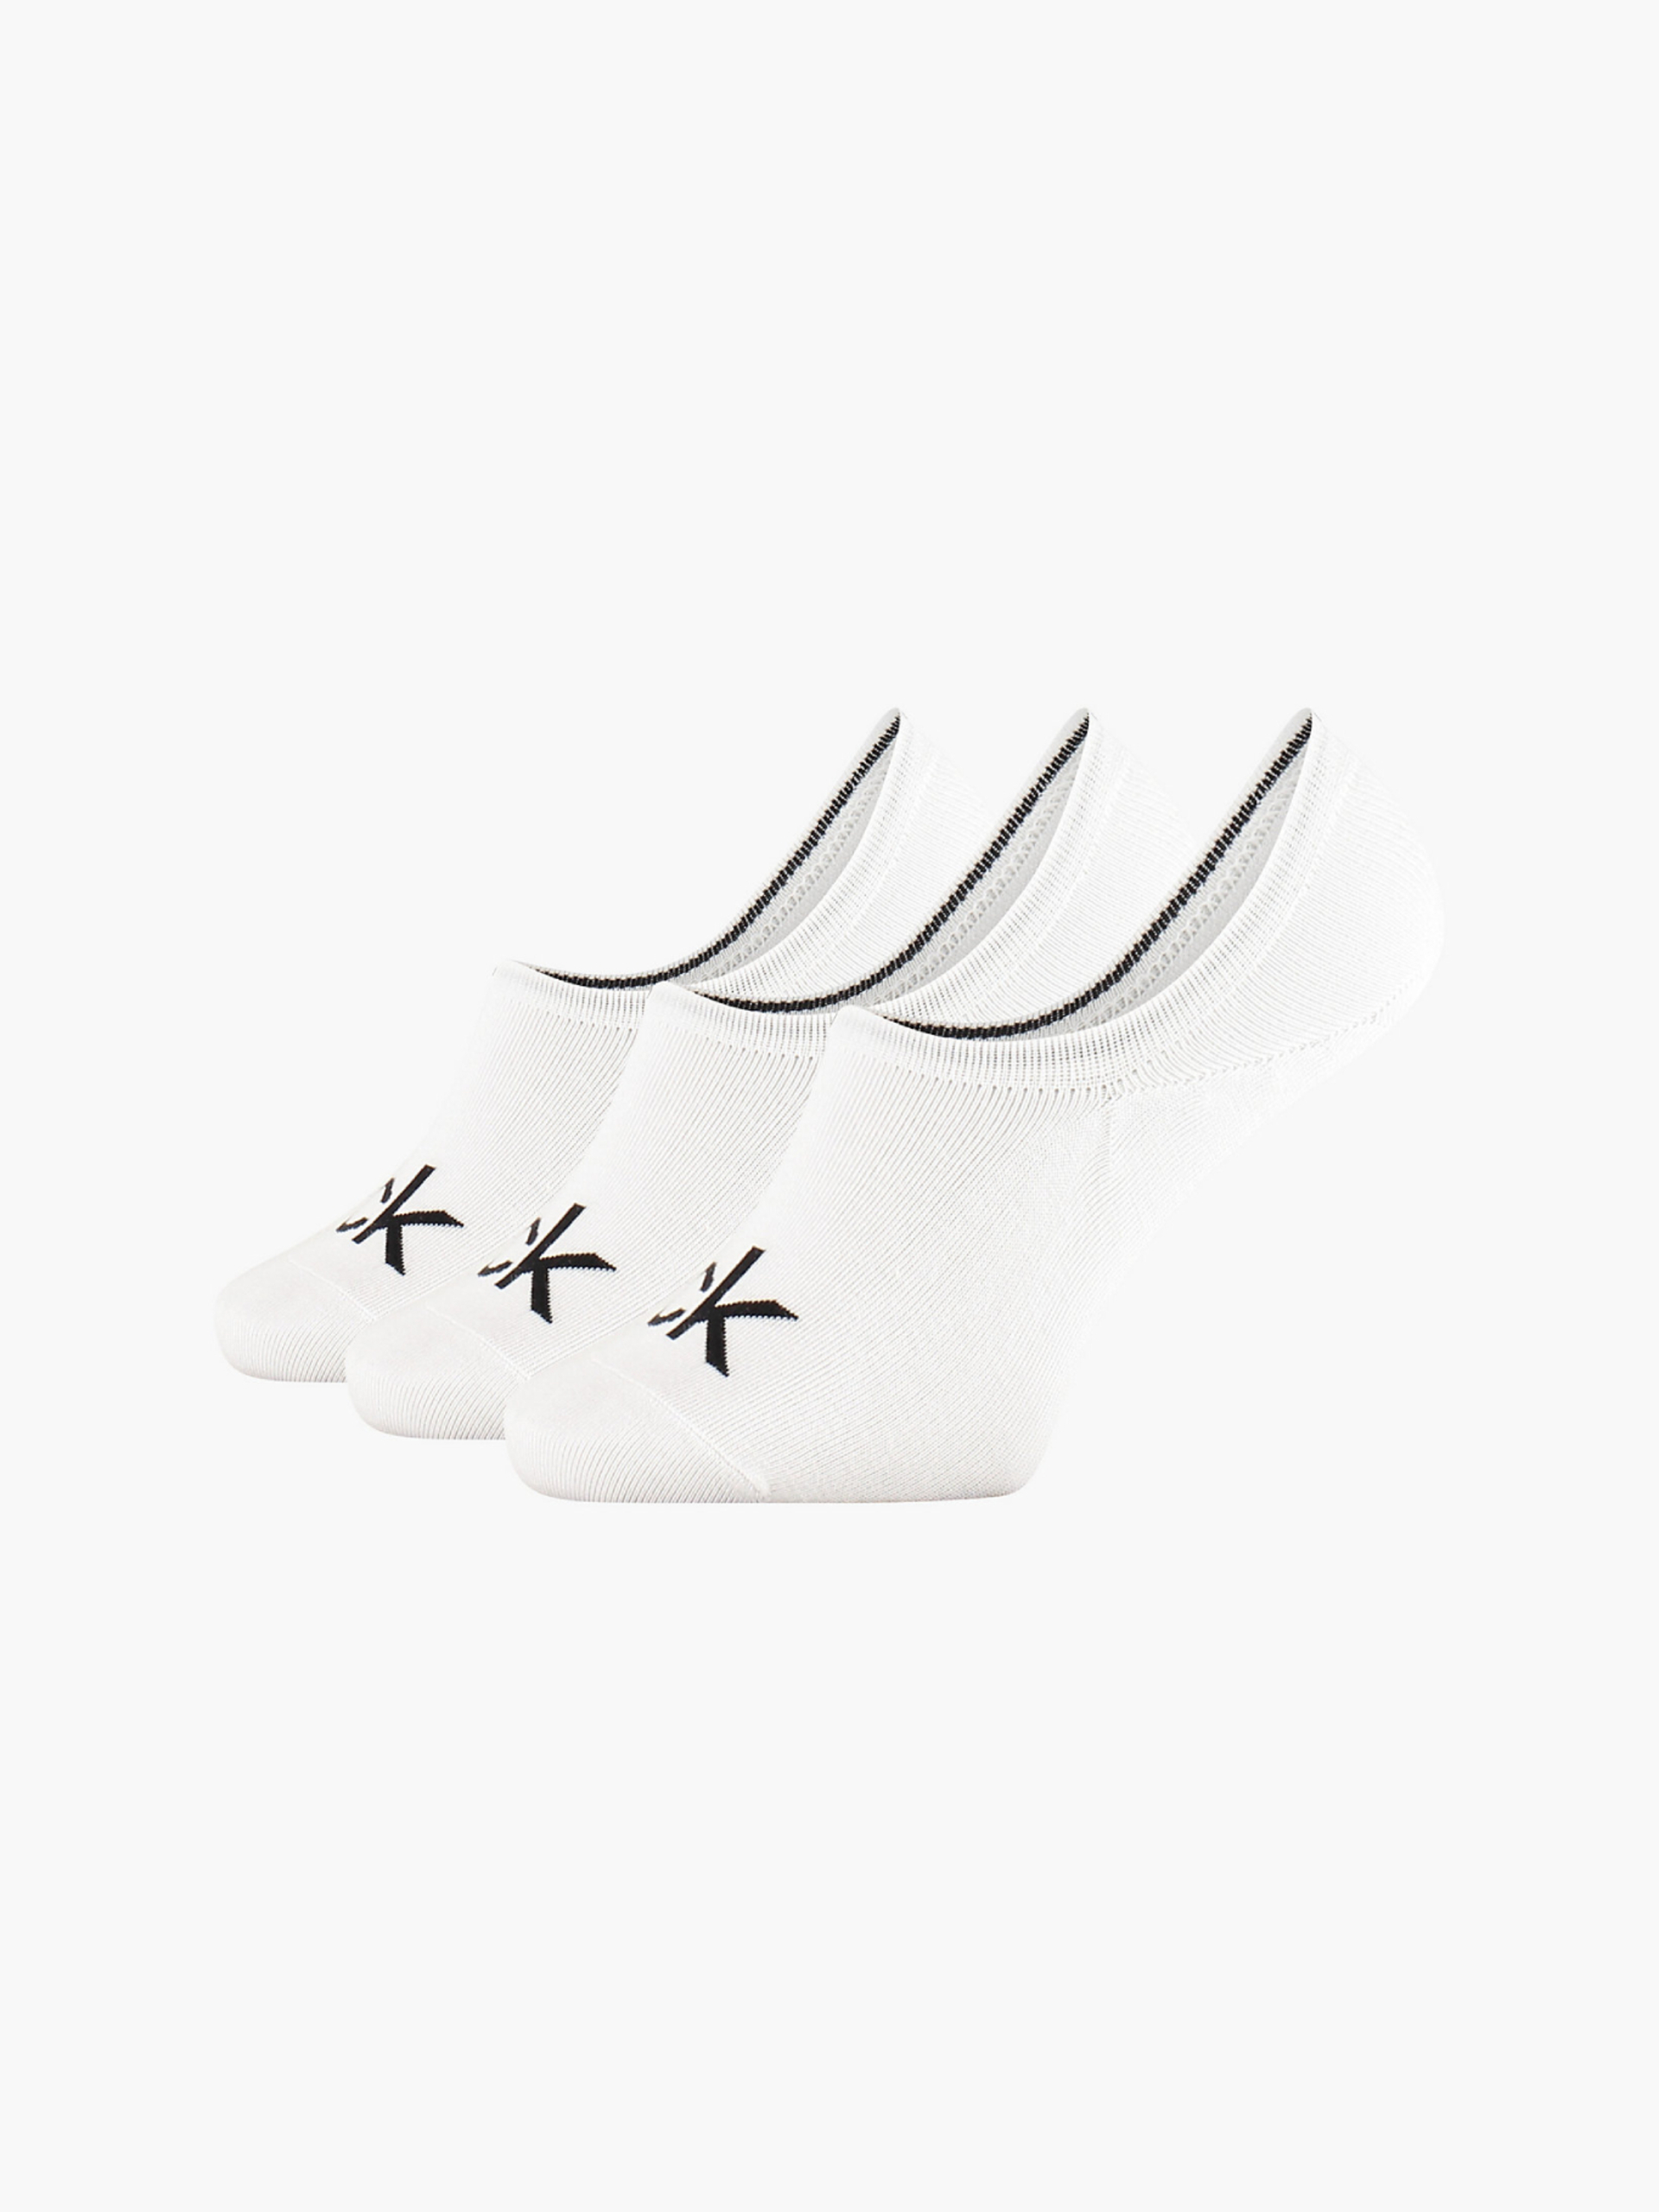 Calvin Klein pánské bílé ponožky 3pack - 40 - 46 (10)